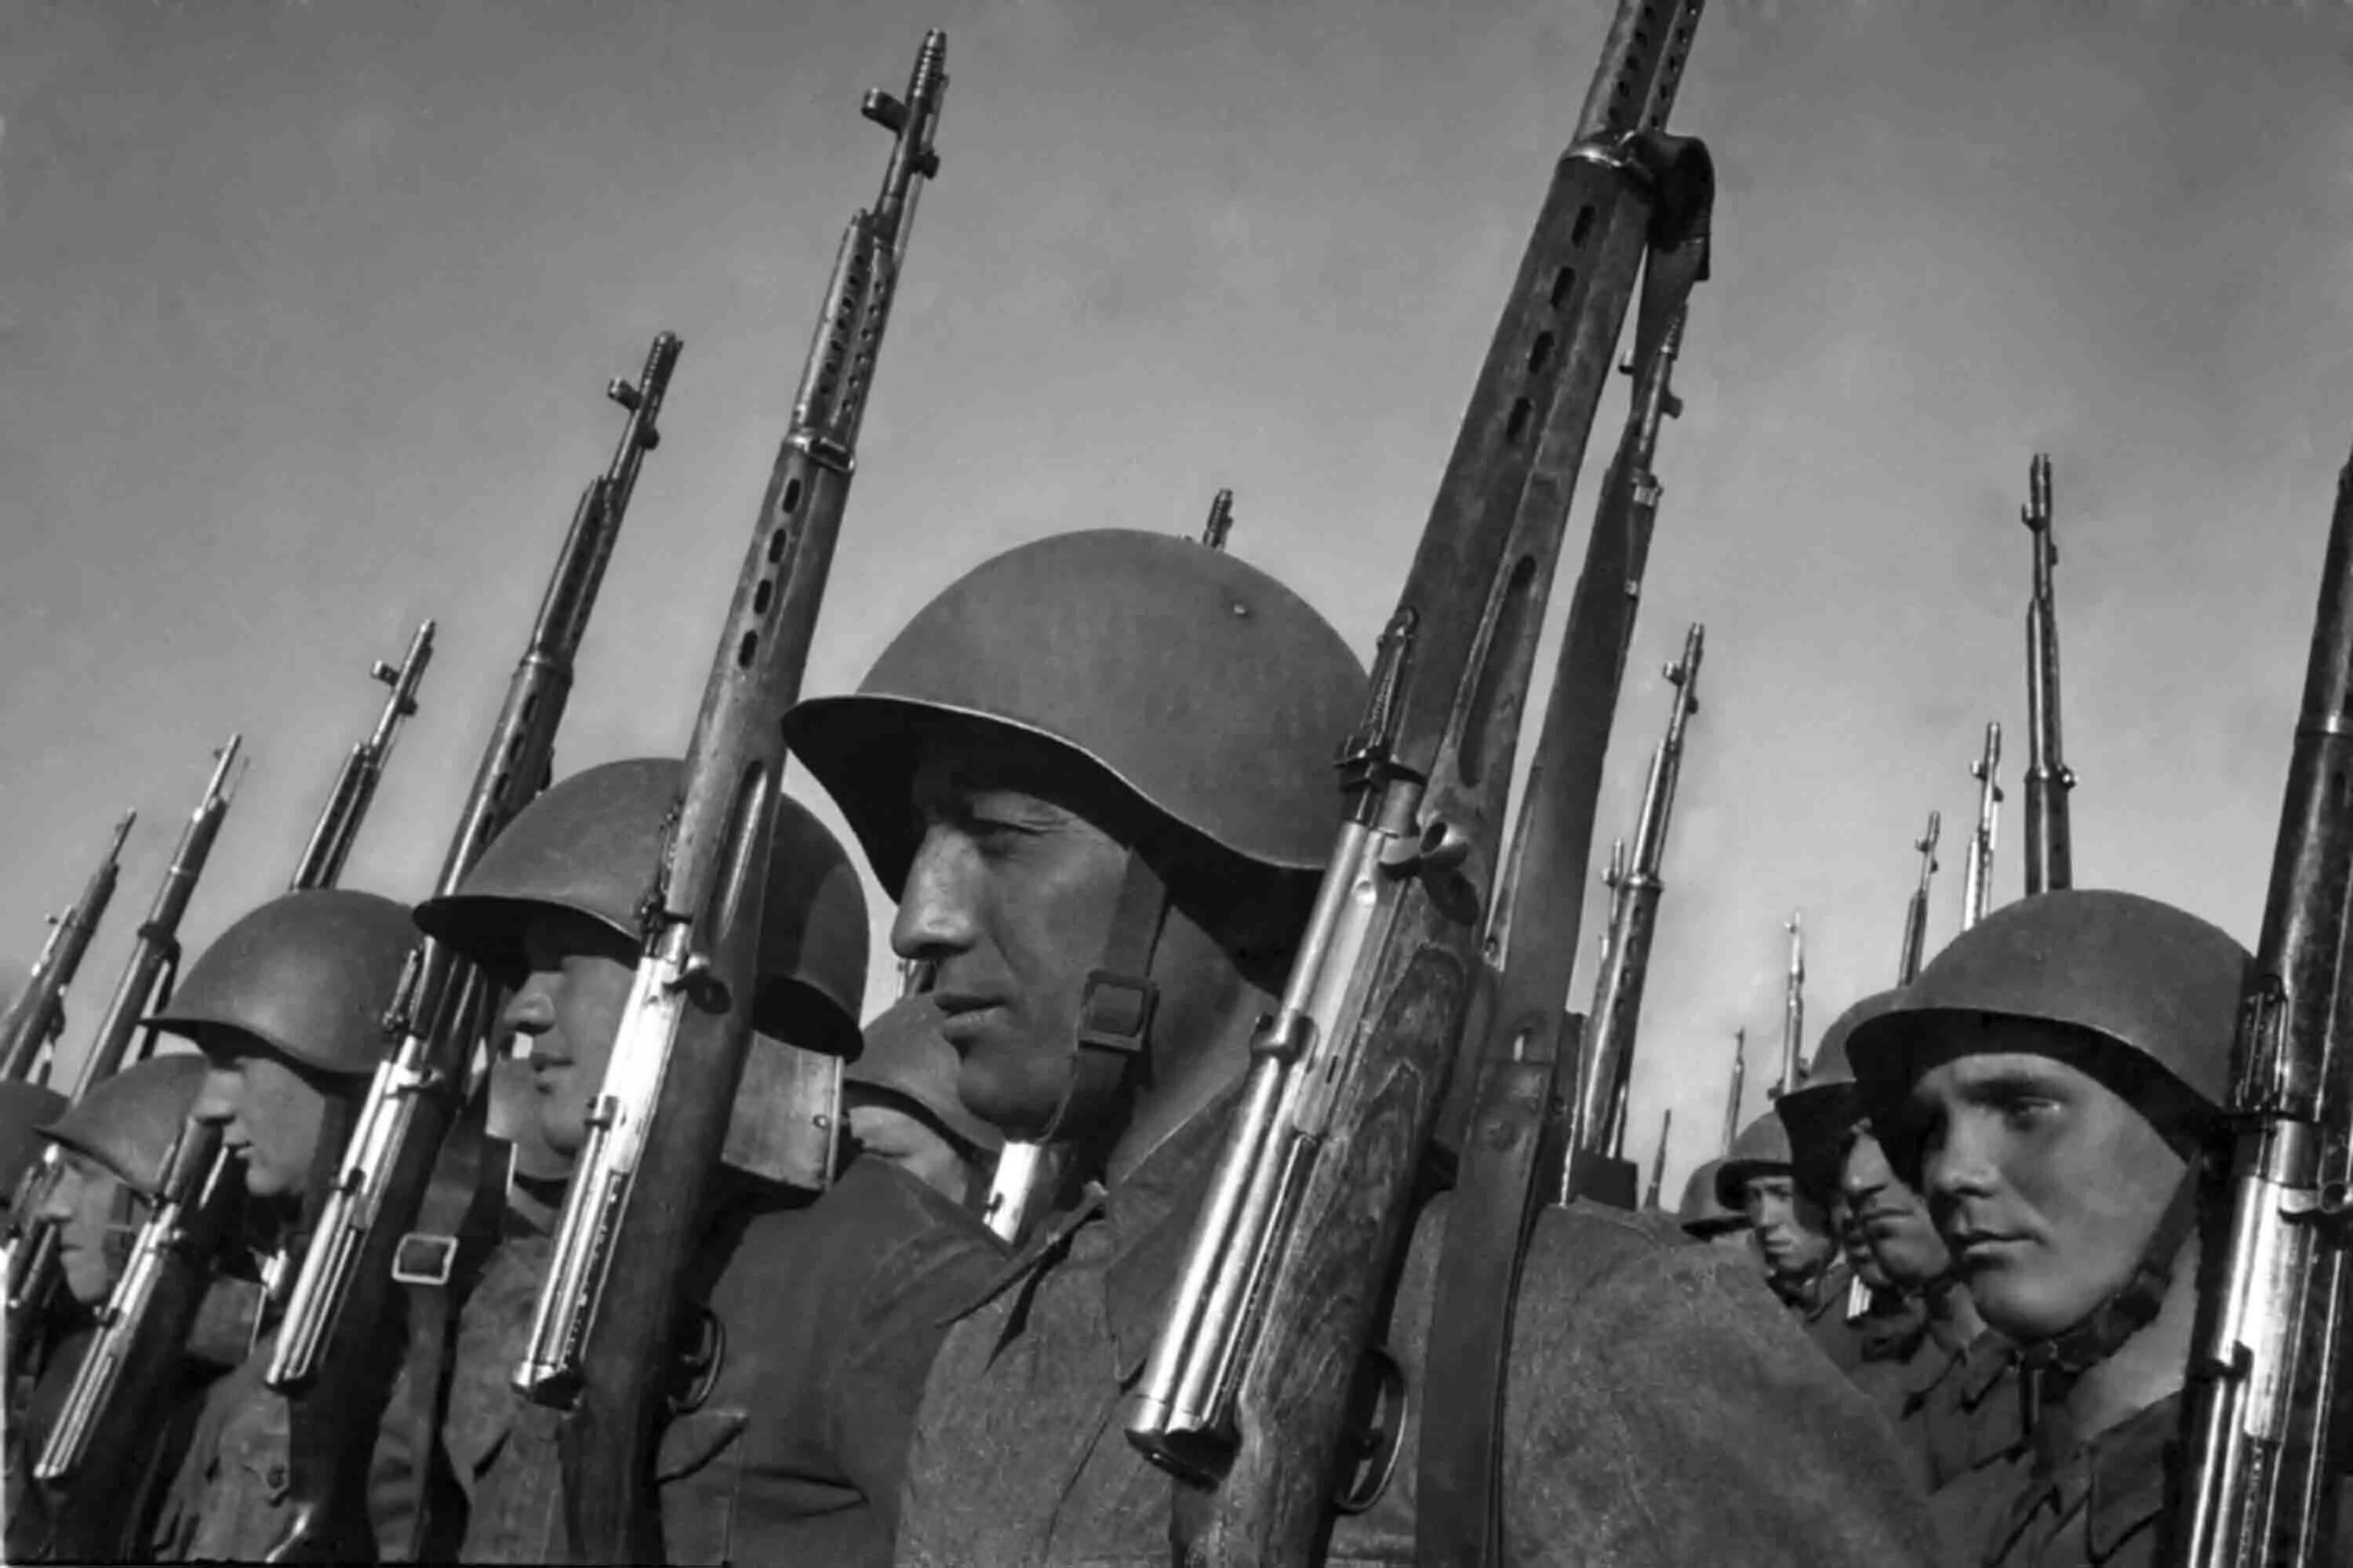 Вторая мировая 18. Советский солдат второй мировой войны 1941. ВОВ 1941-1945 Строй солдат. Солдат с свт-40.